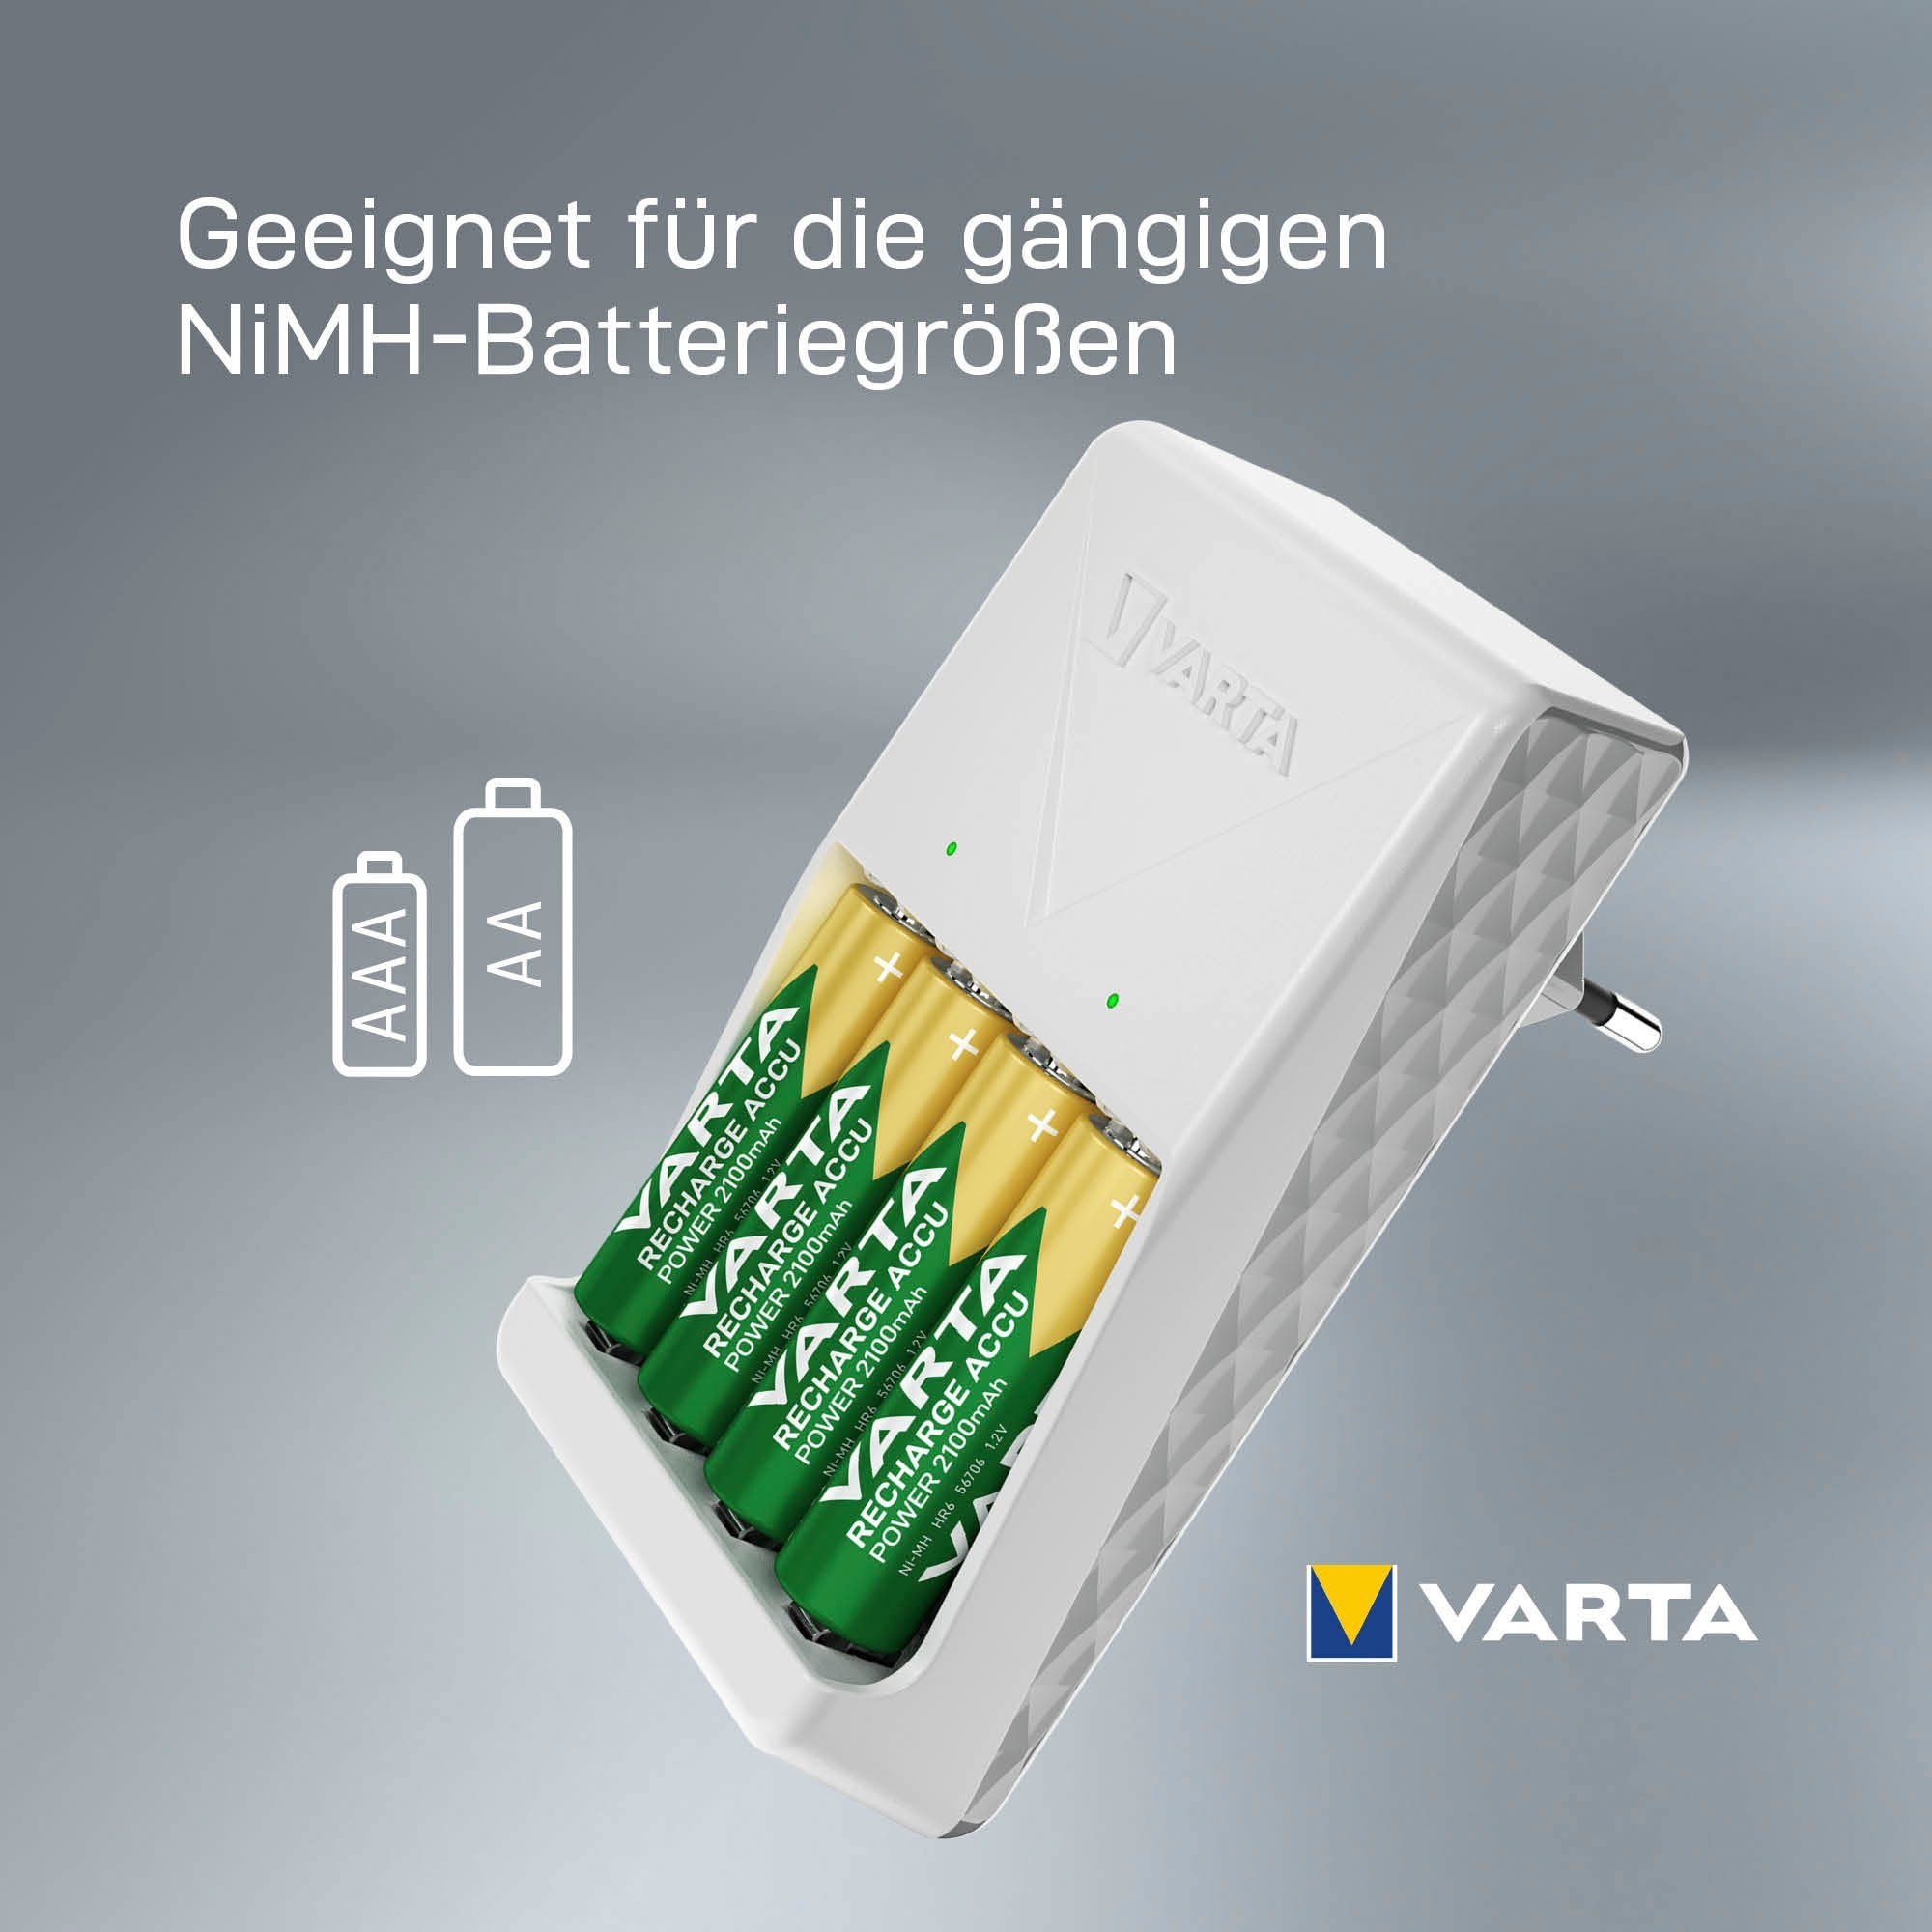 Charger (1-tlg) Batterie-Ladegerät VARTA Plug